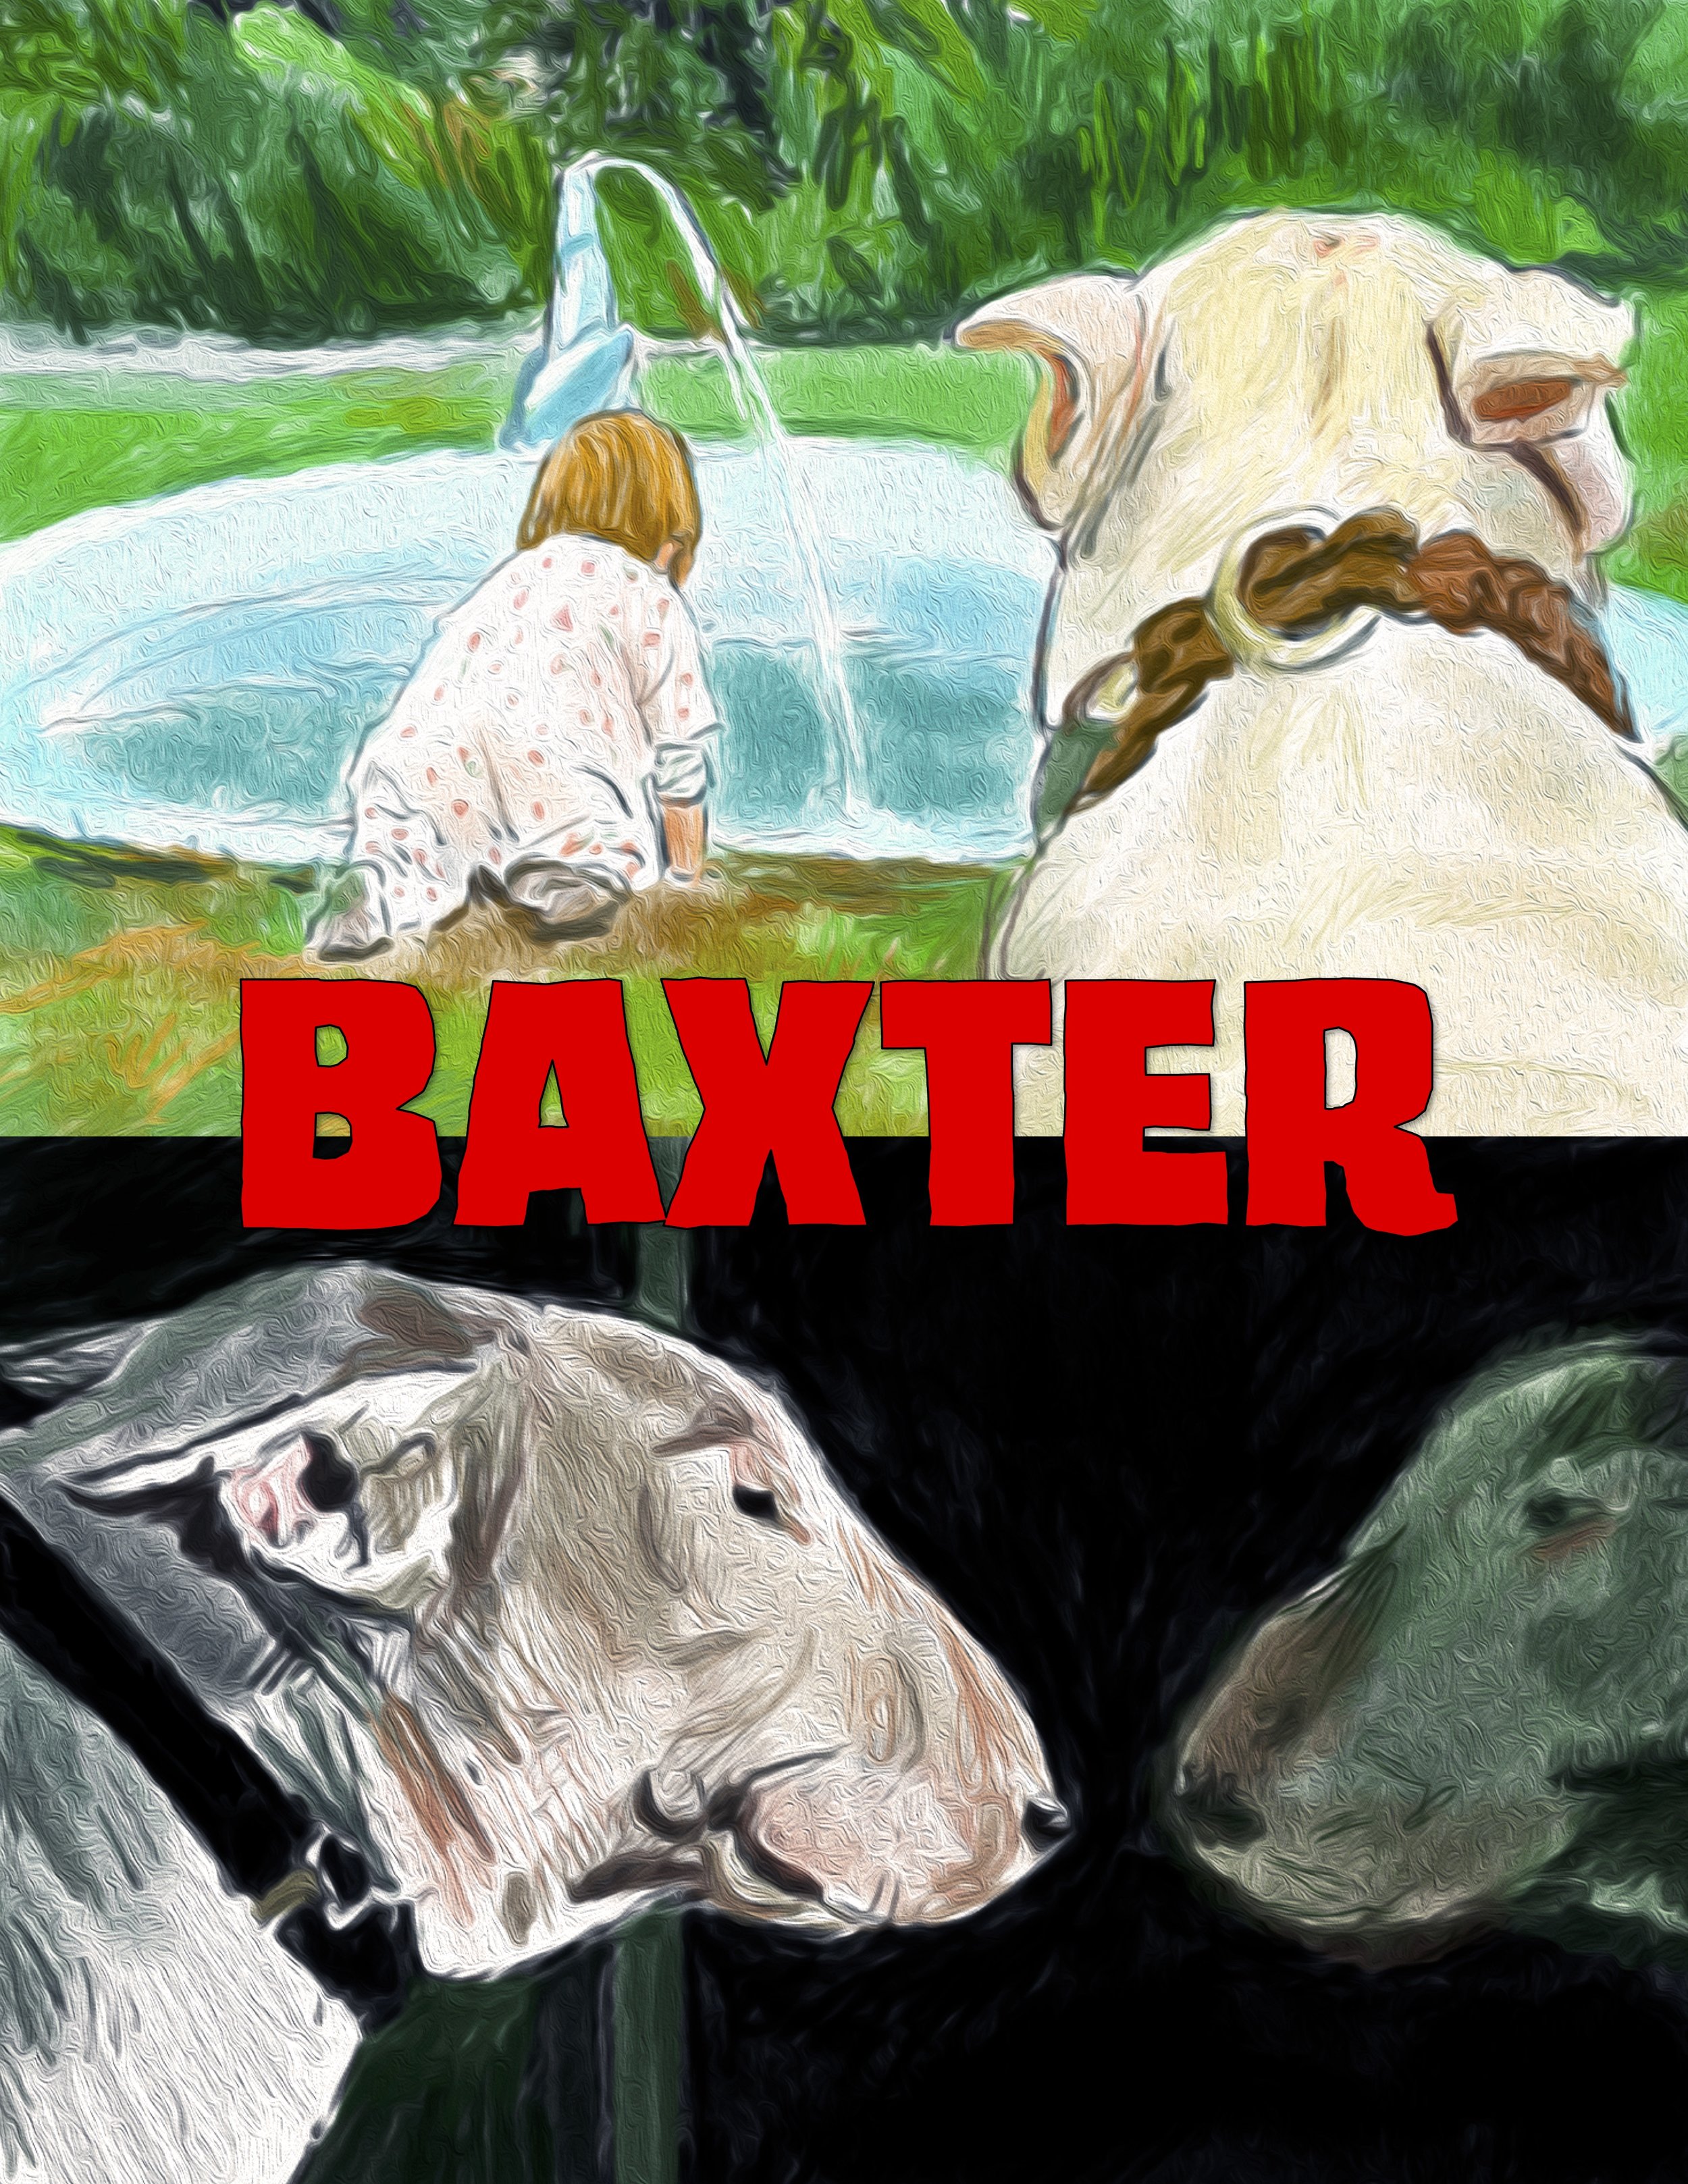 Baxter (1989)